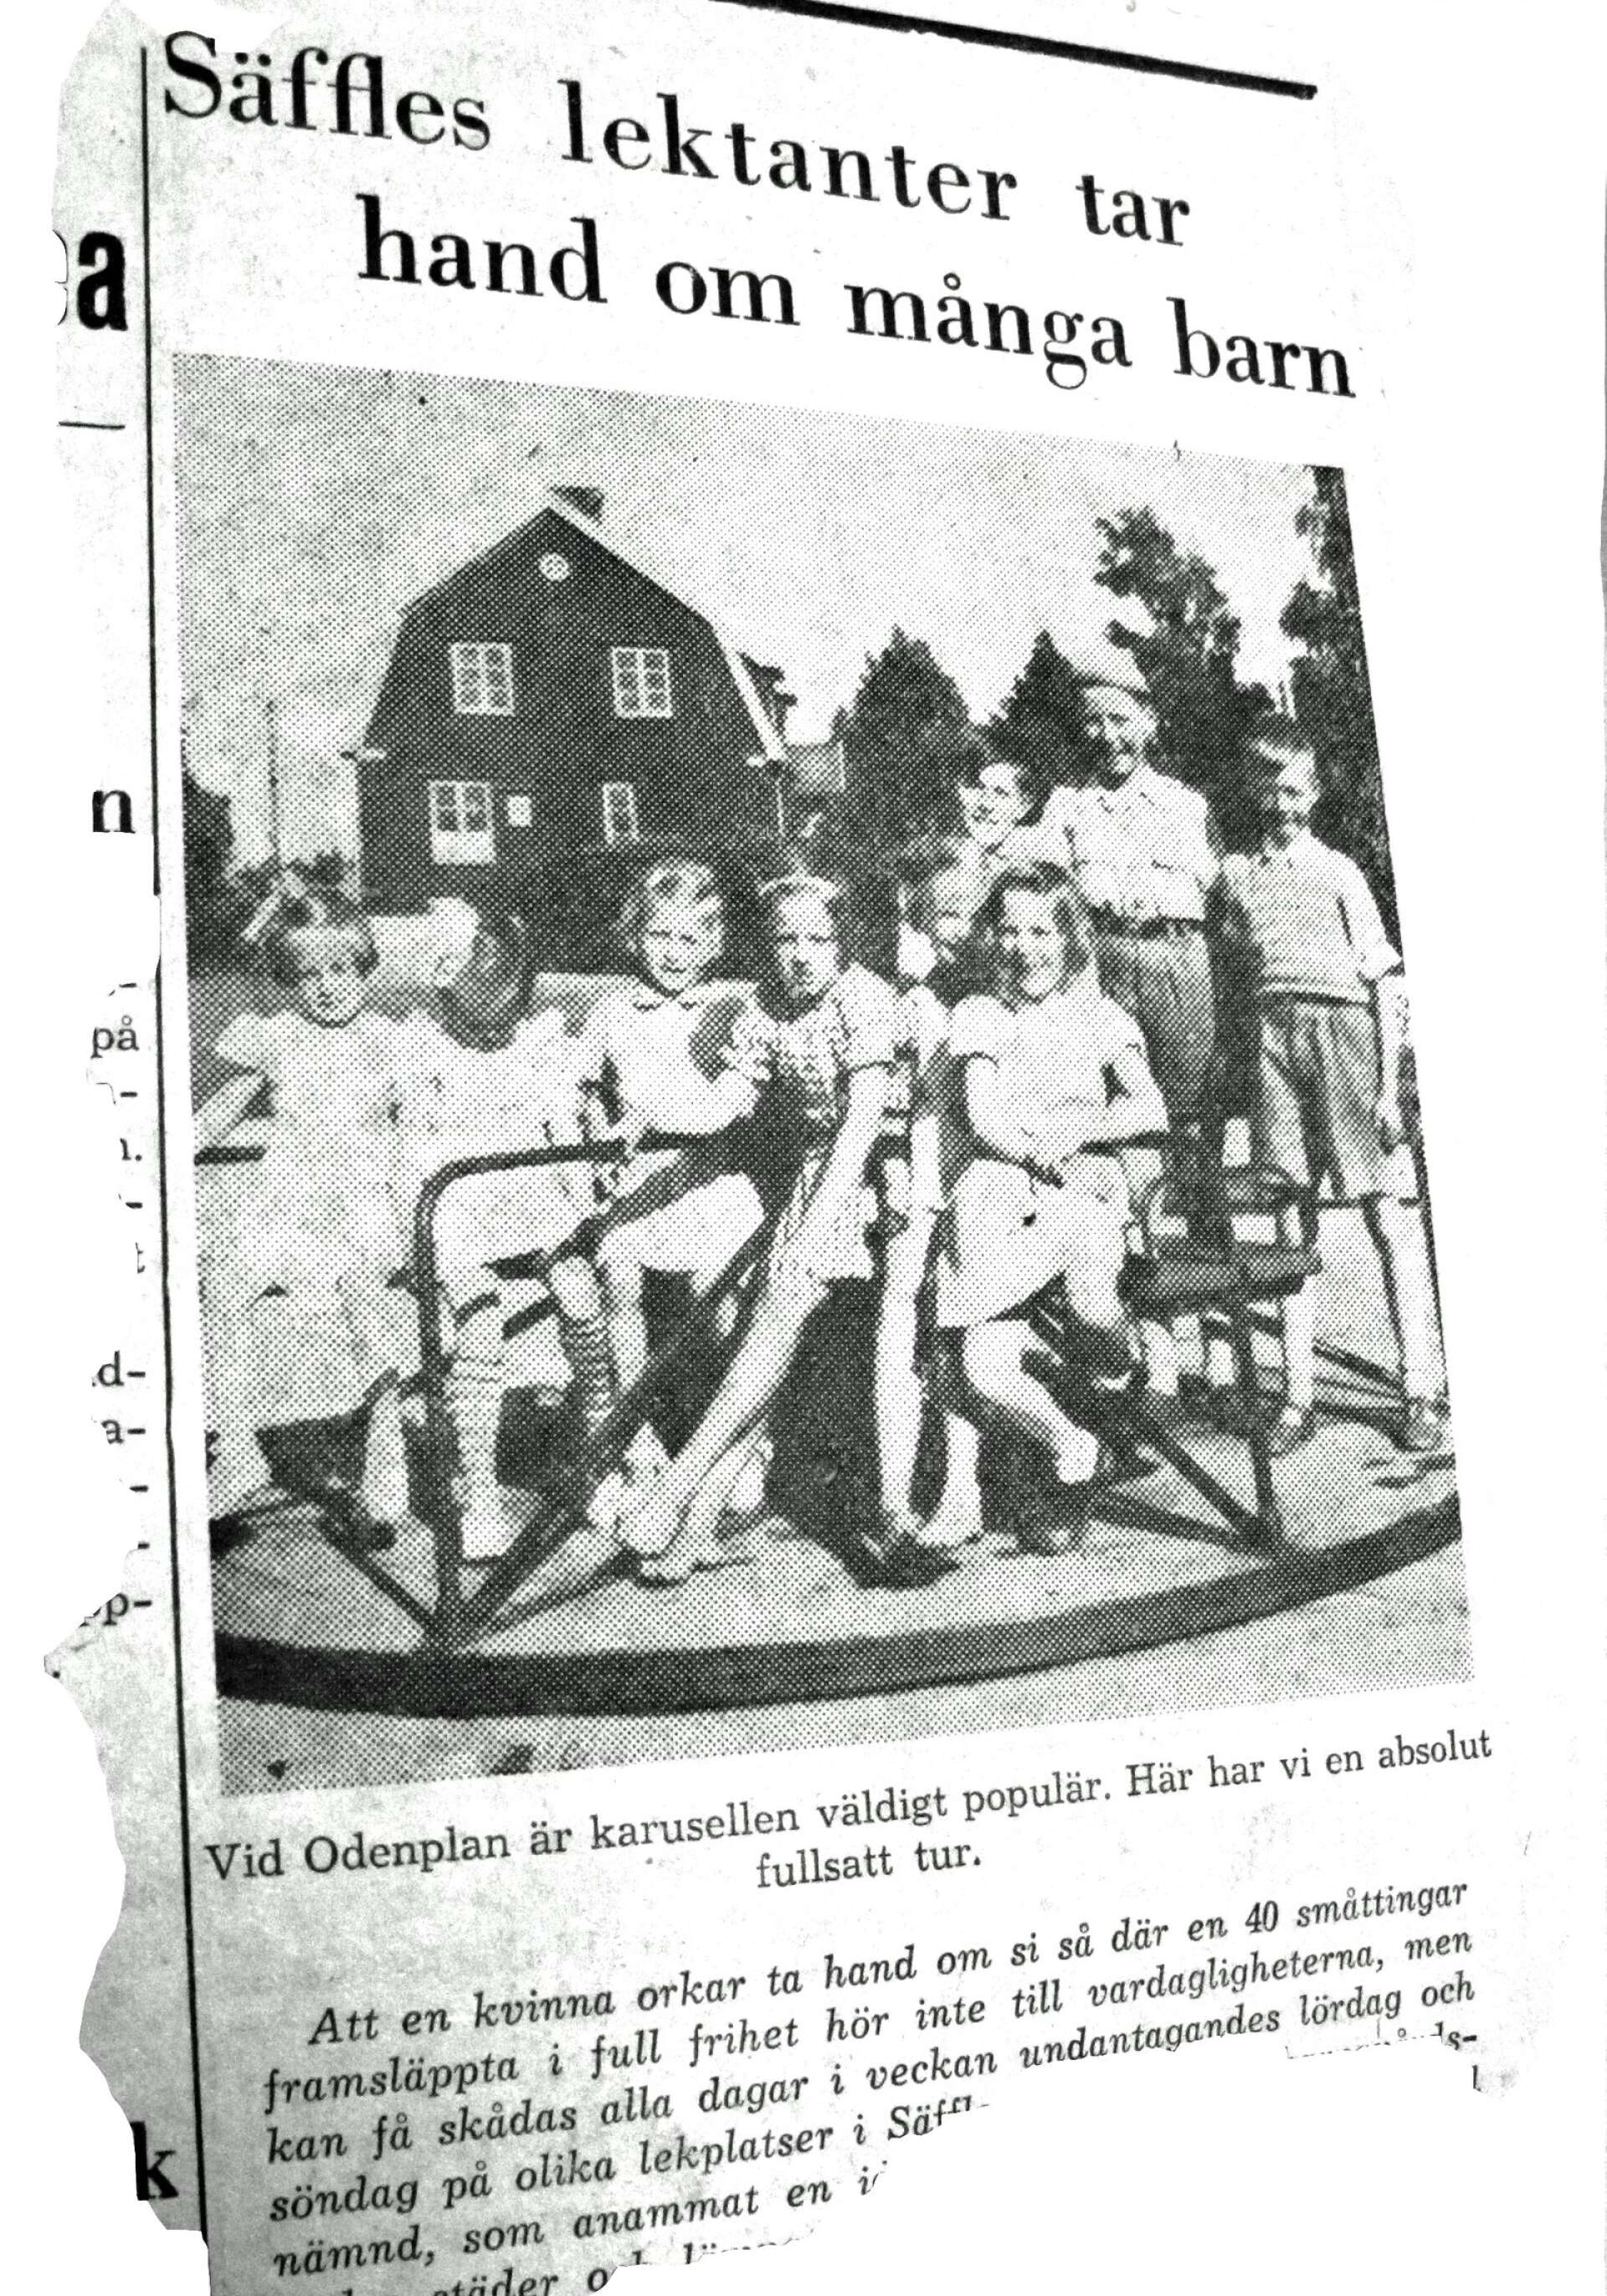 Från 1950 och framåt ordnades parklek på lekplatser i Säffle. Lektanter fanns på plats. En lekplats där det skedde var Odenplan. Säffle-Tidningen berättade om barnavårdsnämndens initiativ. 